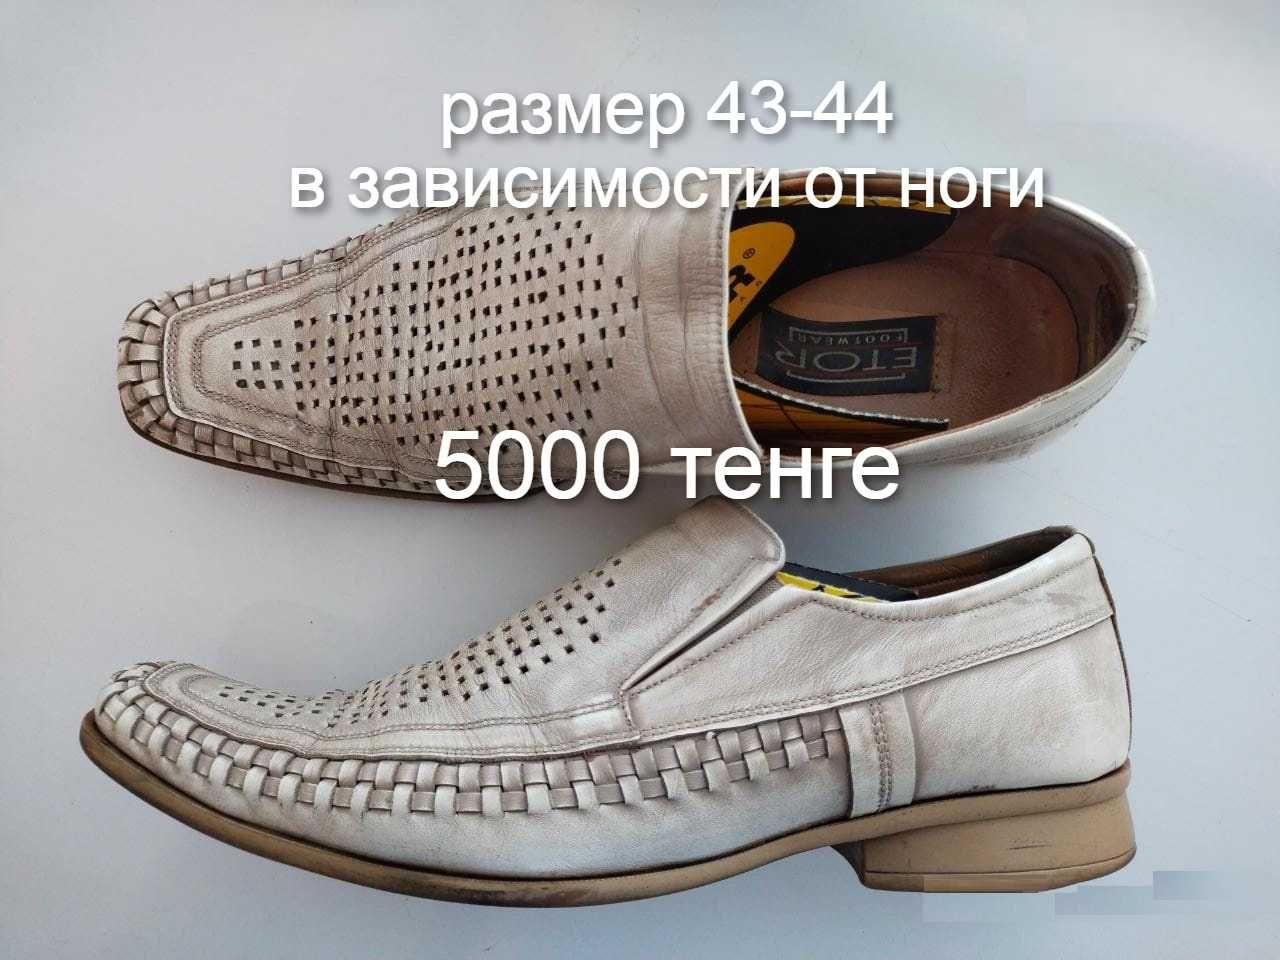 Продам мужскую обувь 43-44 размеры